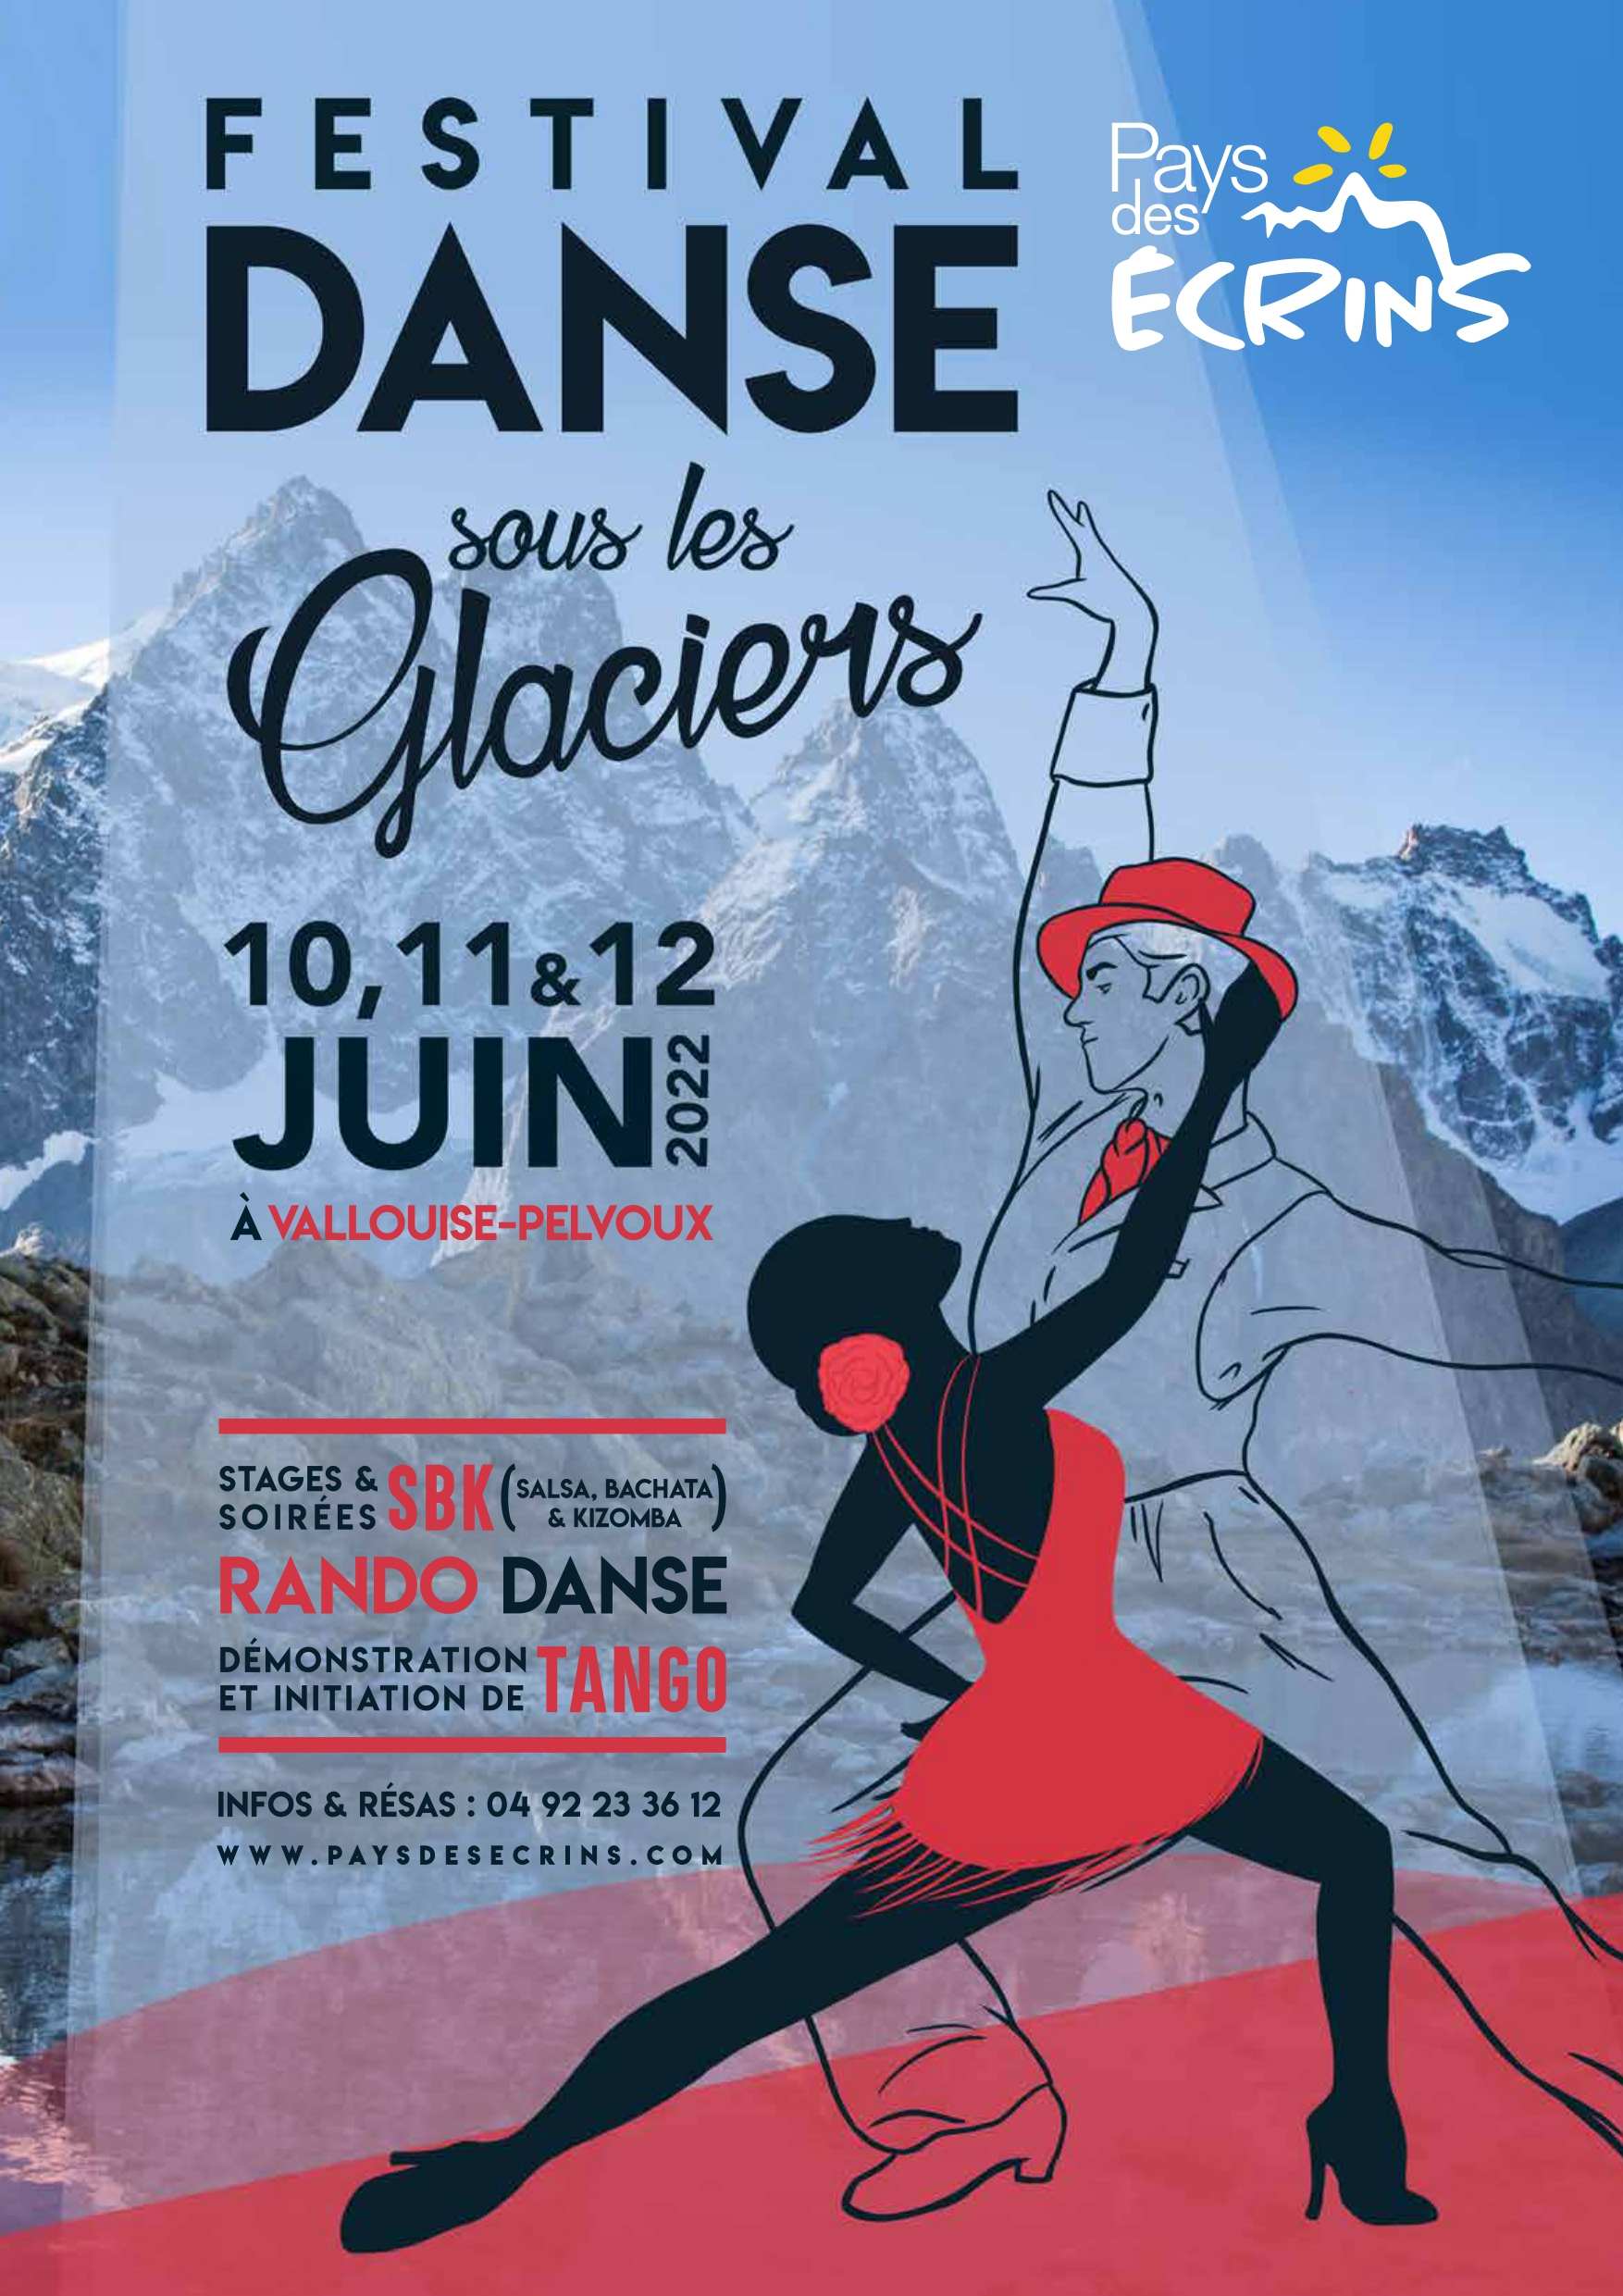 Festival de danse sous les glaciers VALLOUISE PELVOUX